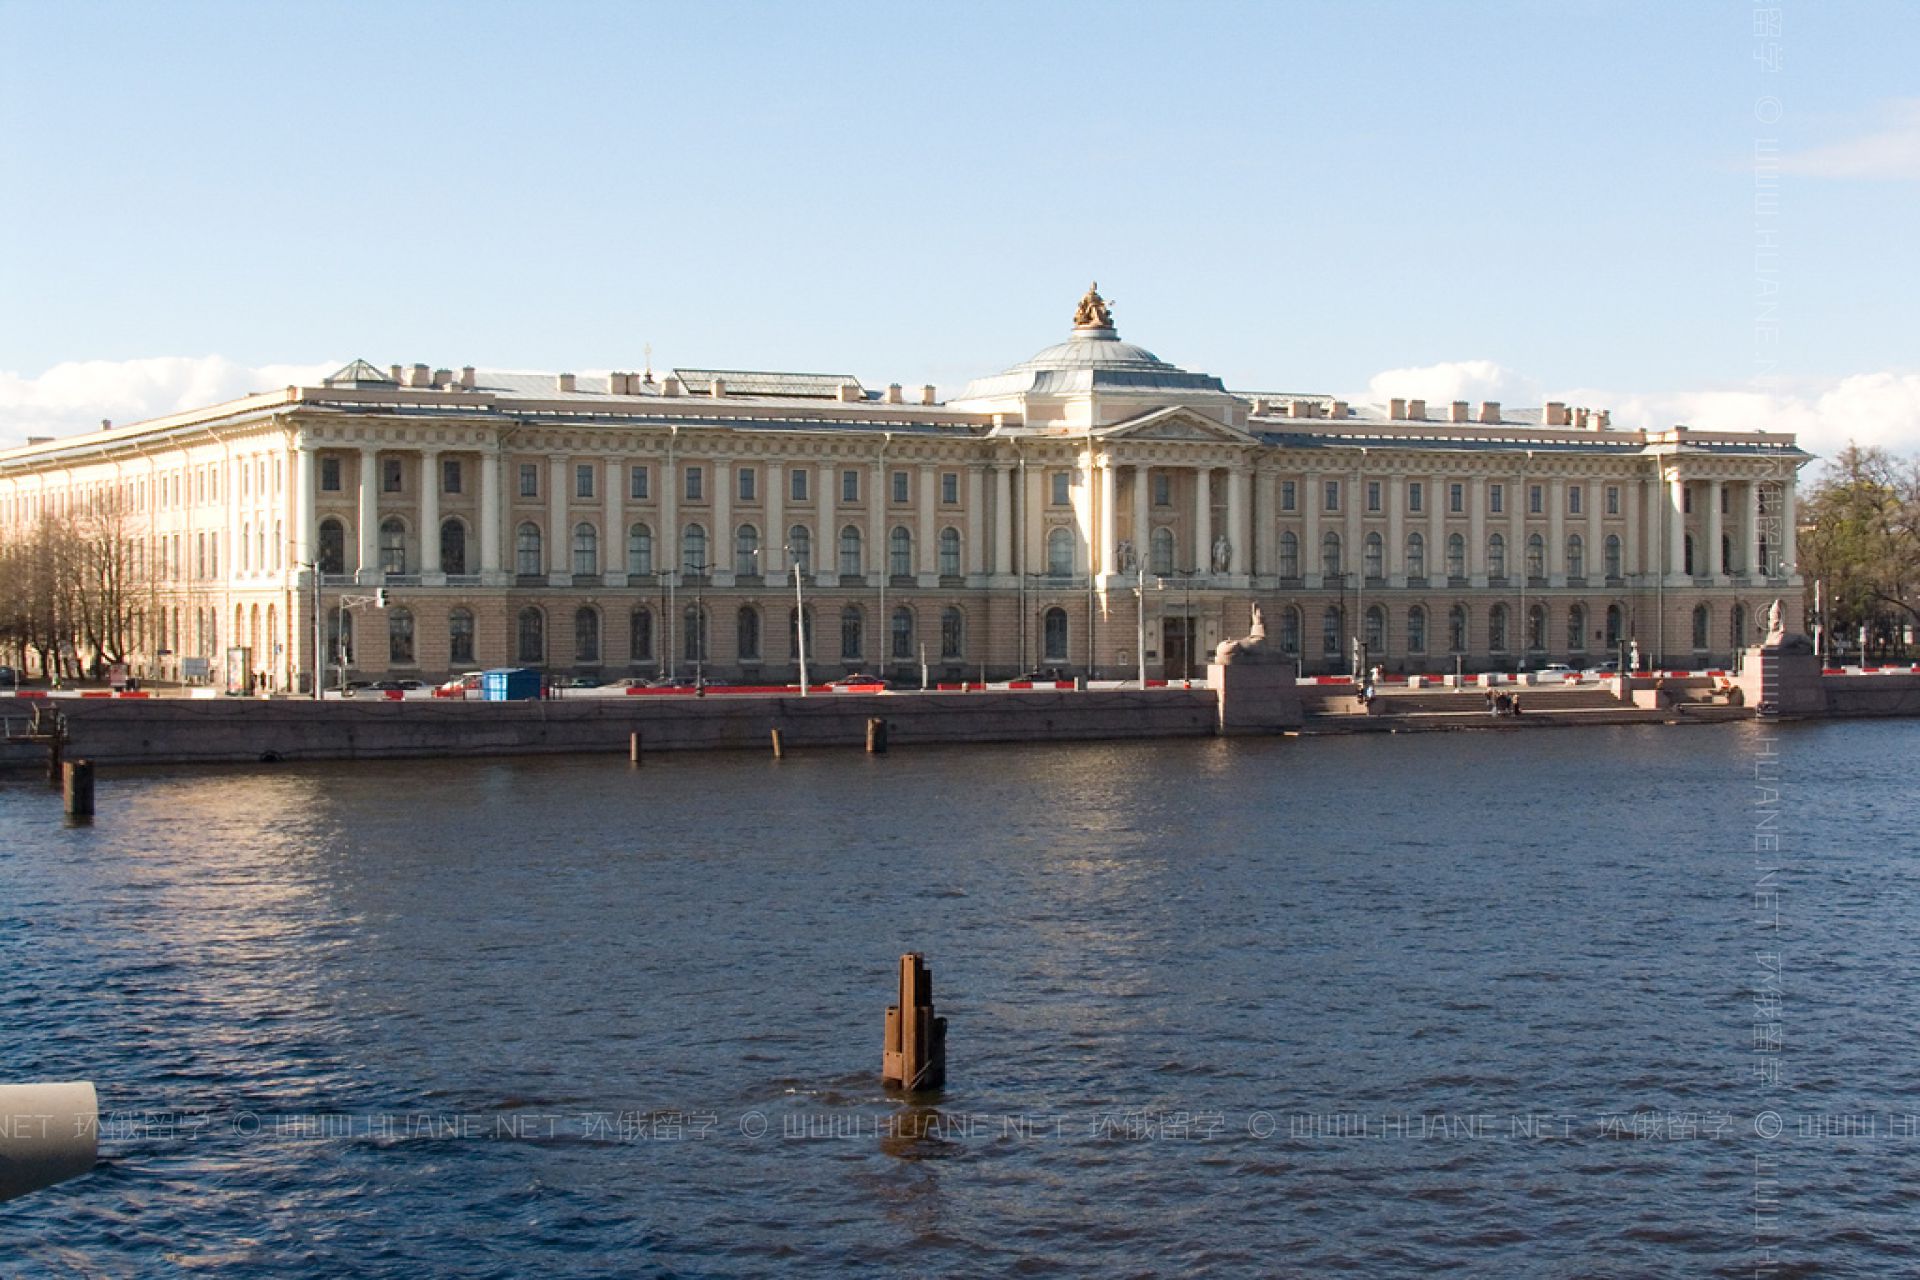 圣彼得堡列宾美术学院